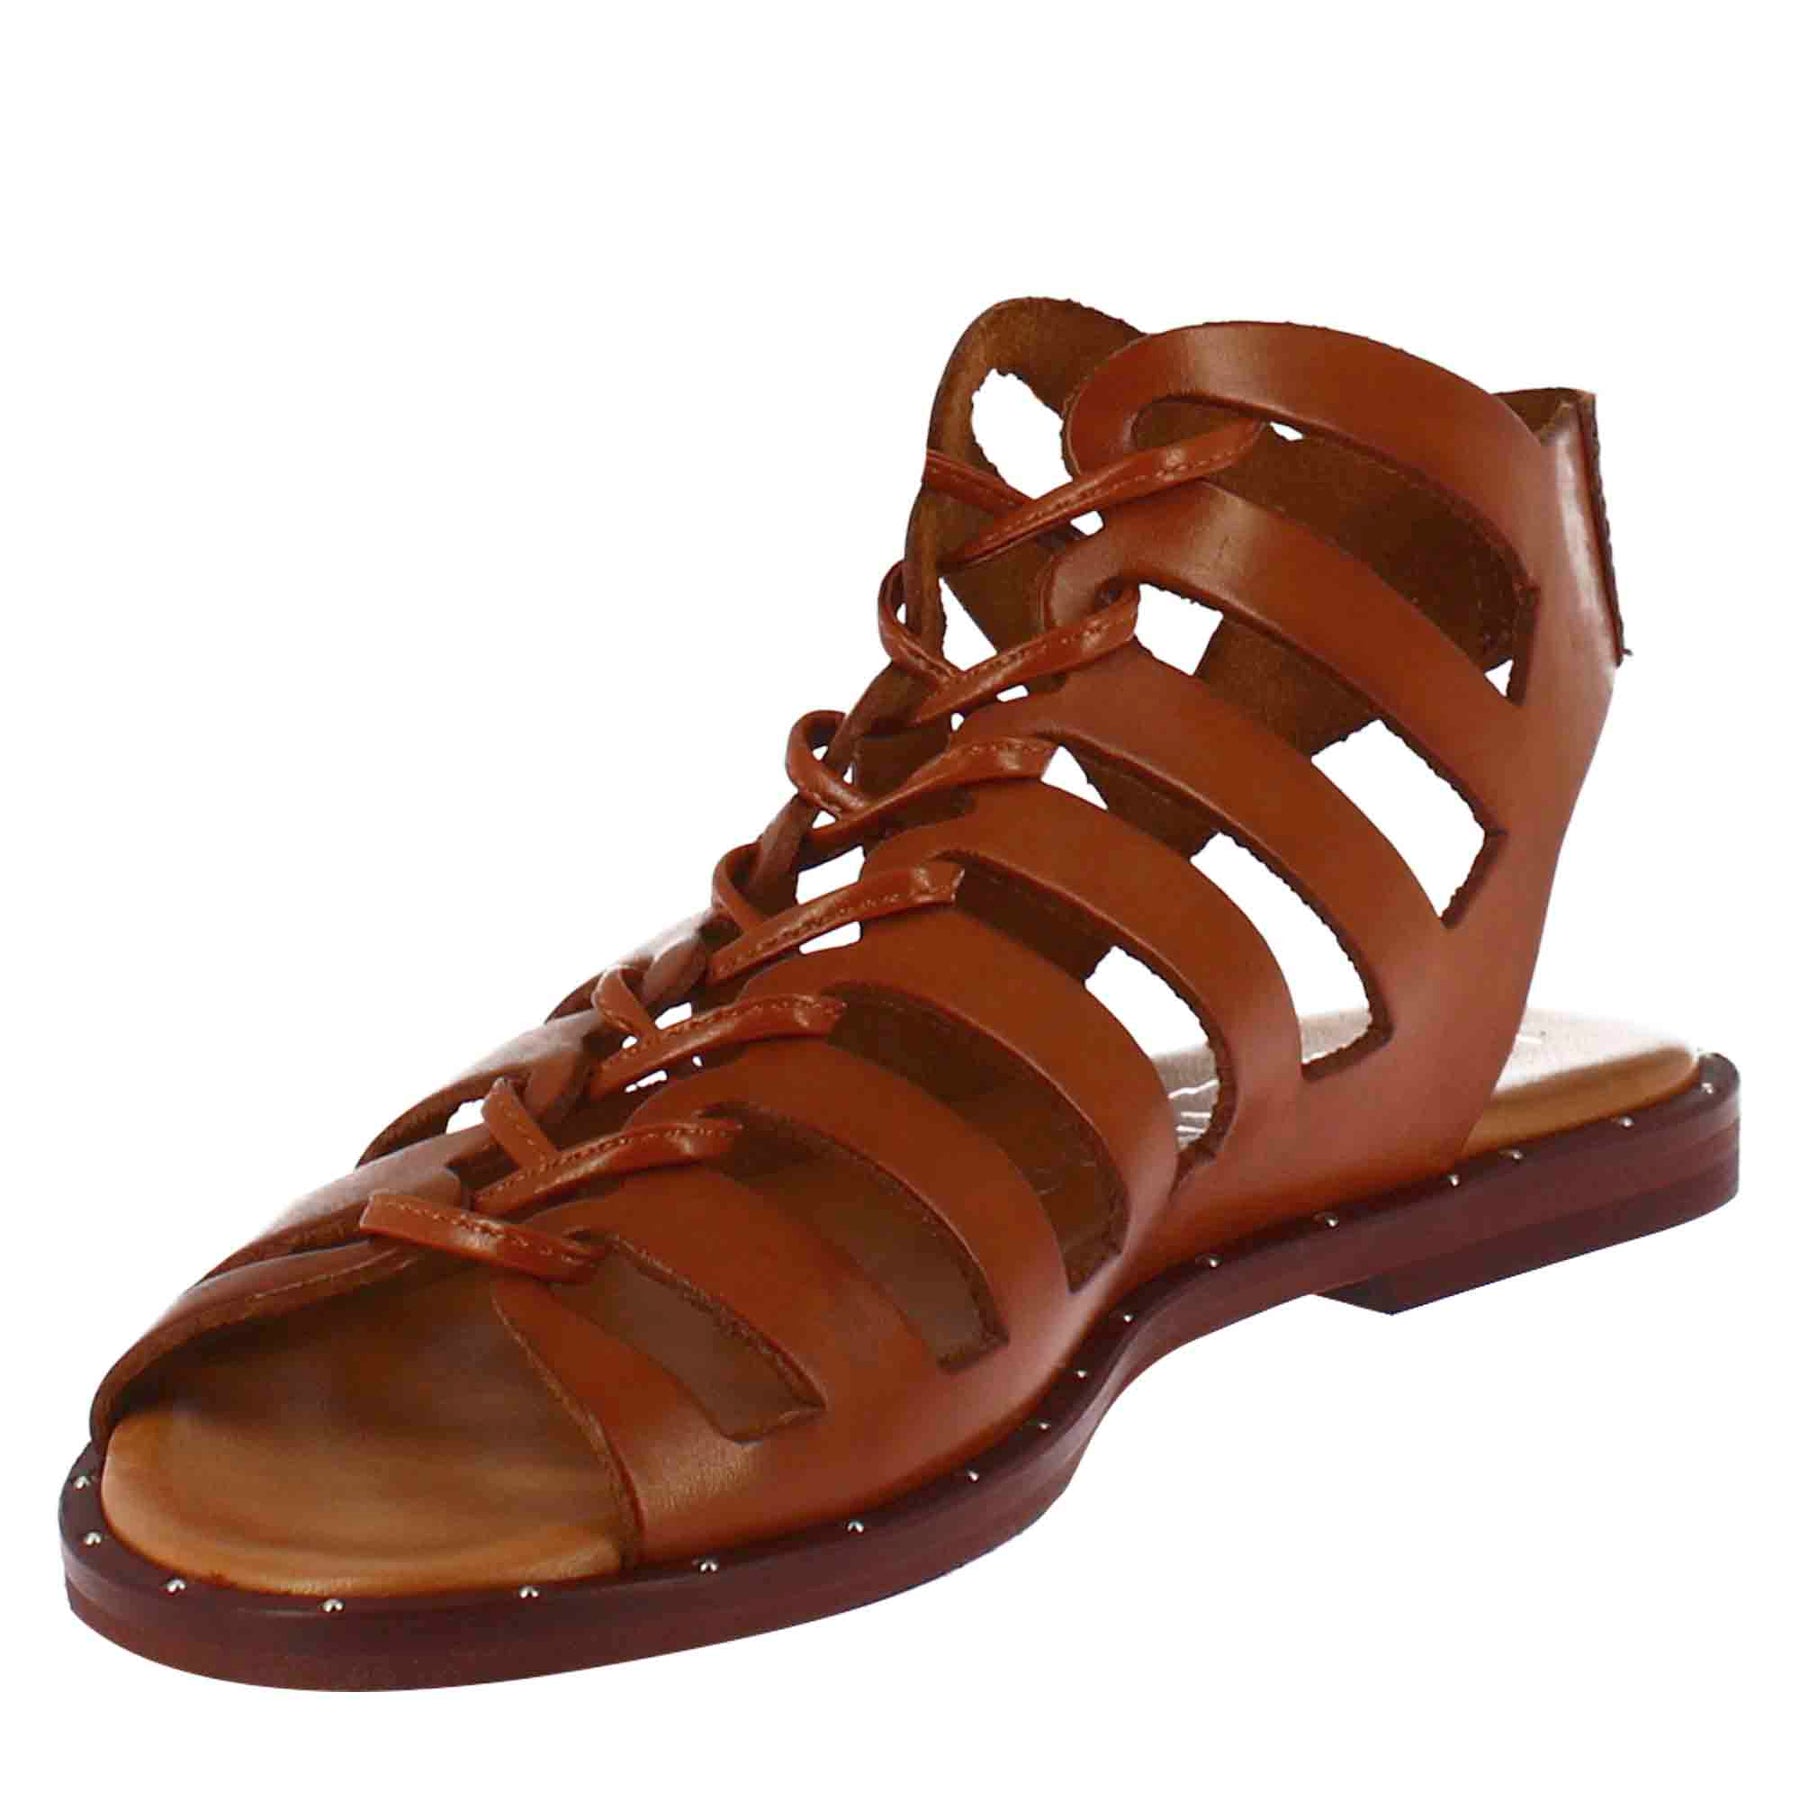 Sandalo gladiatore da donna con lacci fatti a mano in pelle marrone